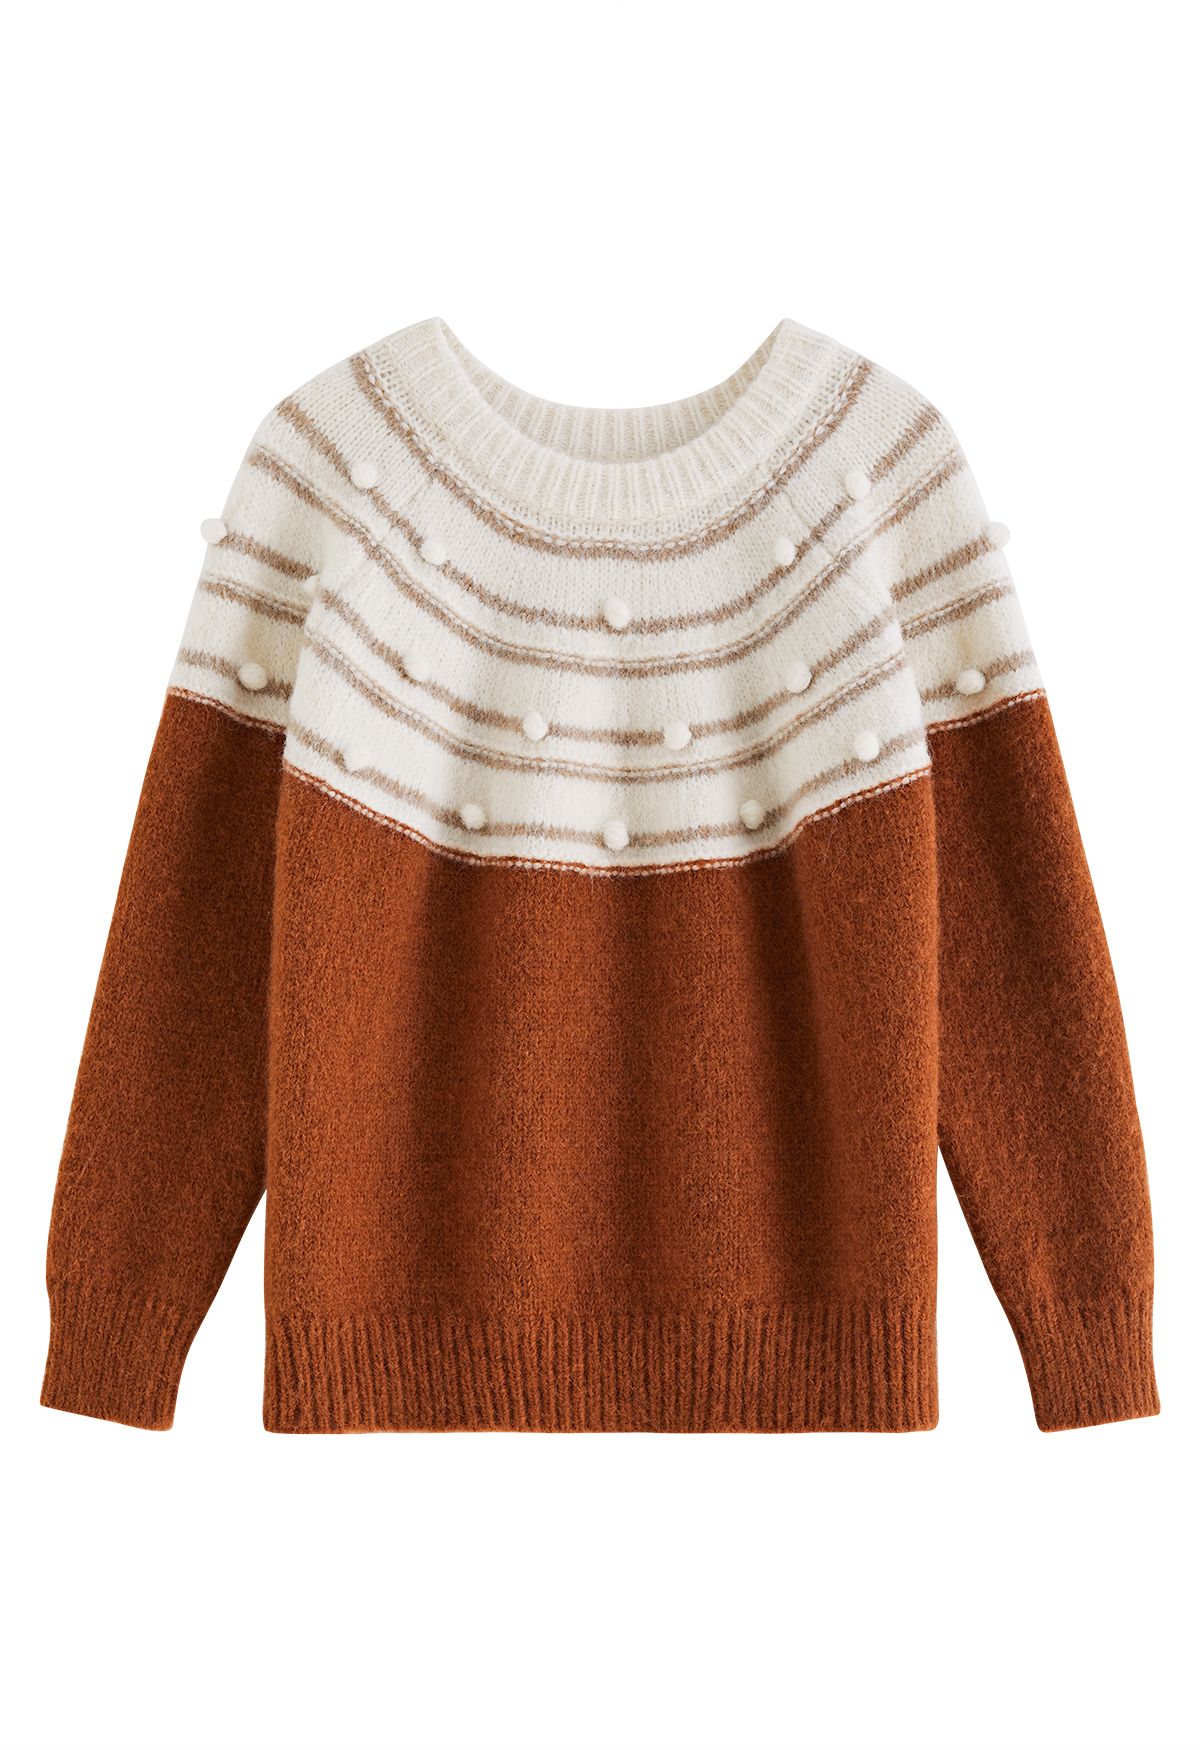 Pom-Pom Fuzzy Slouchy Knit Sweater in Caramel